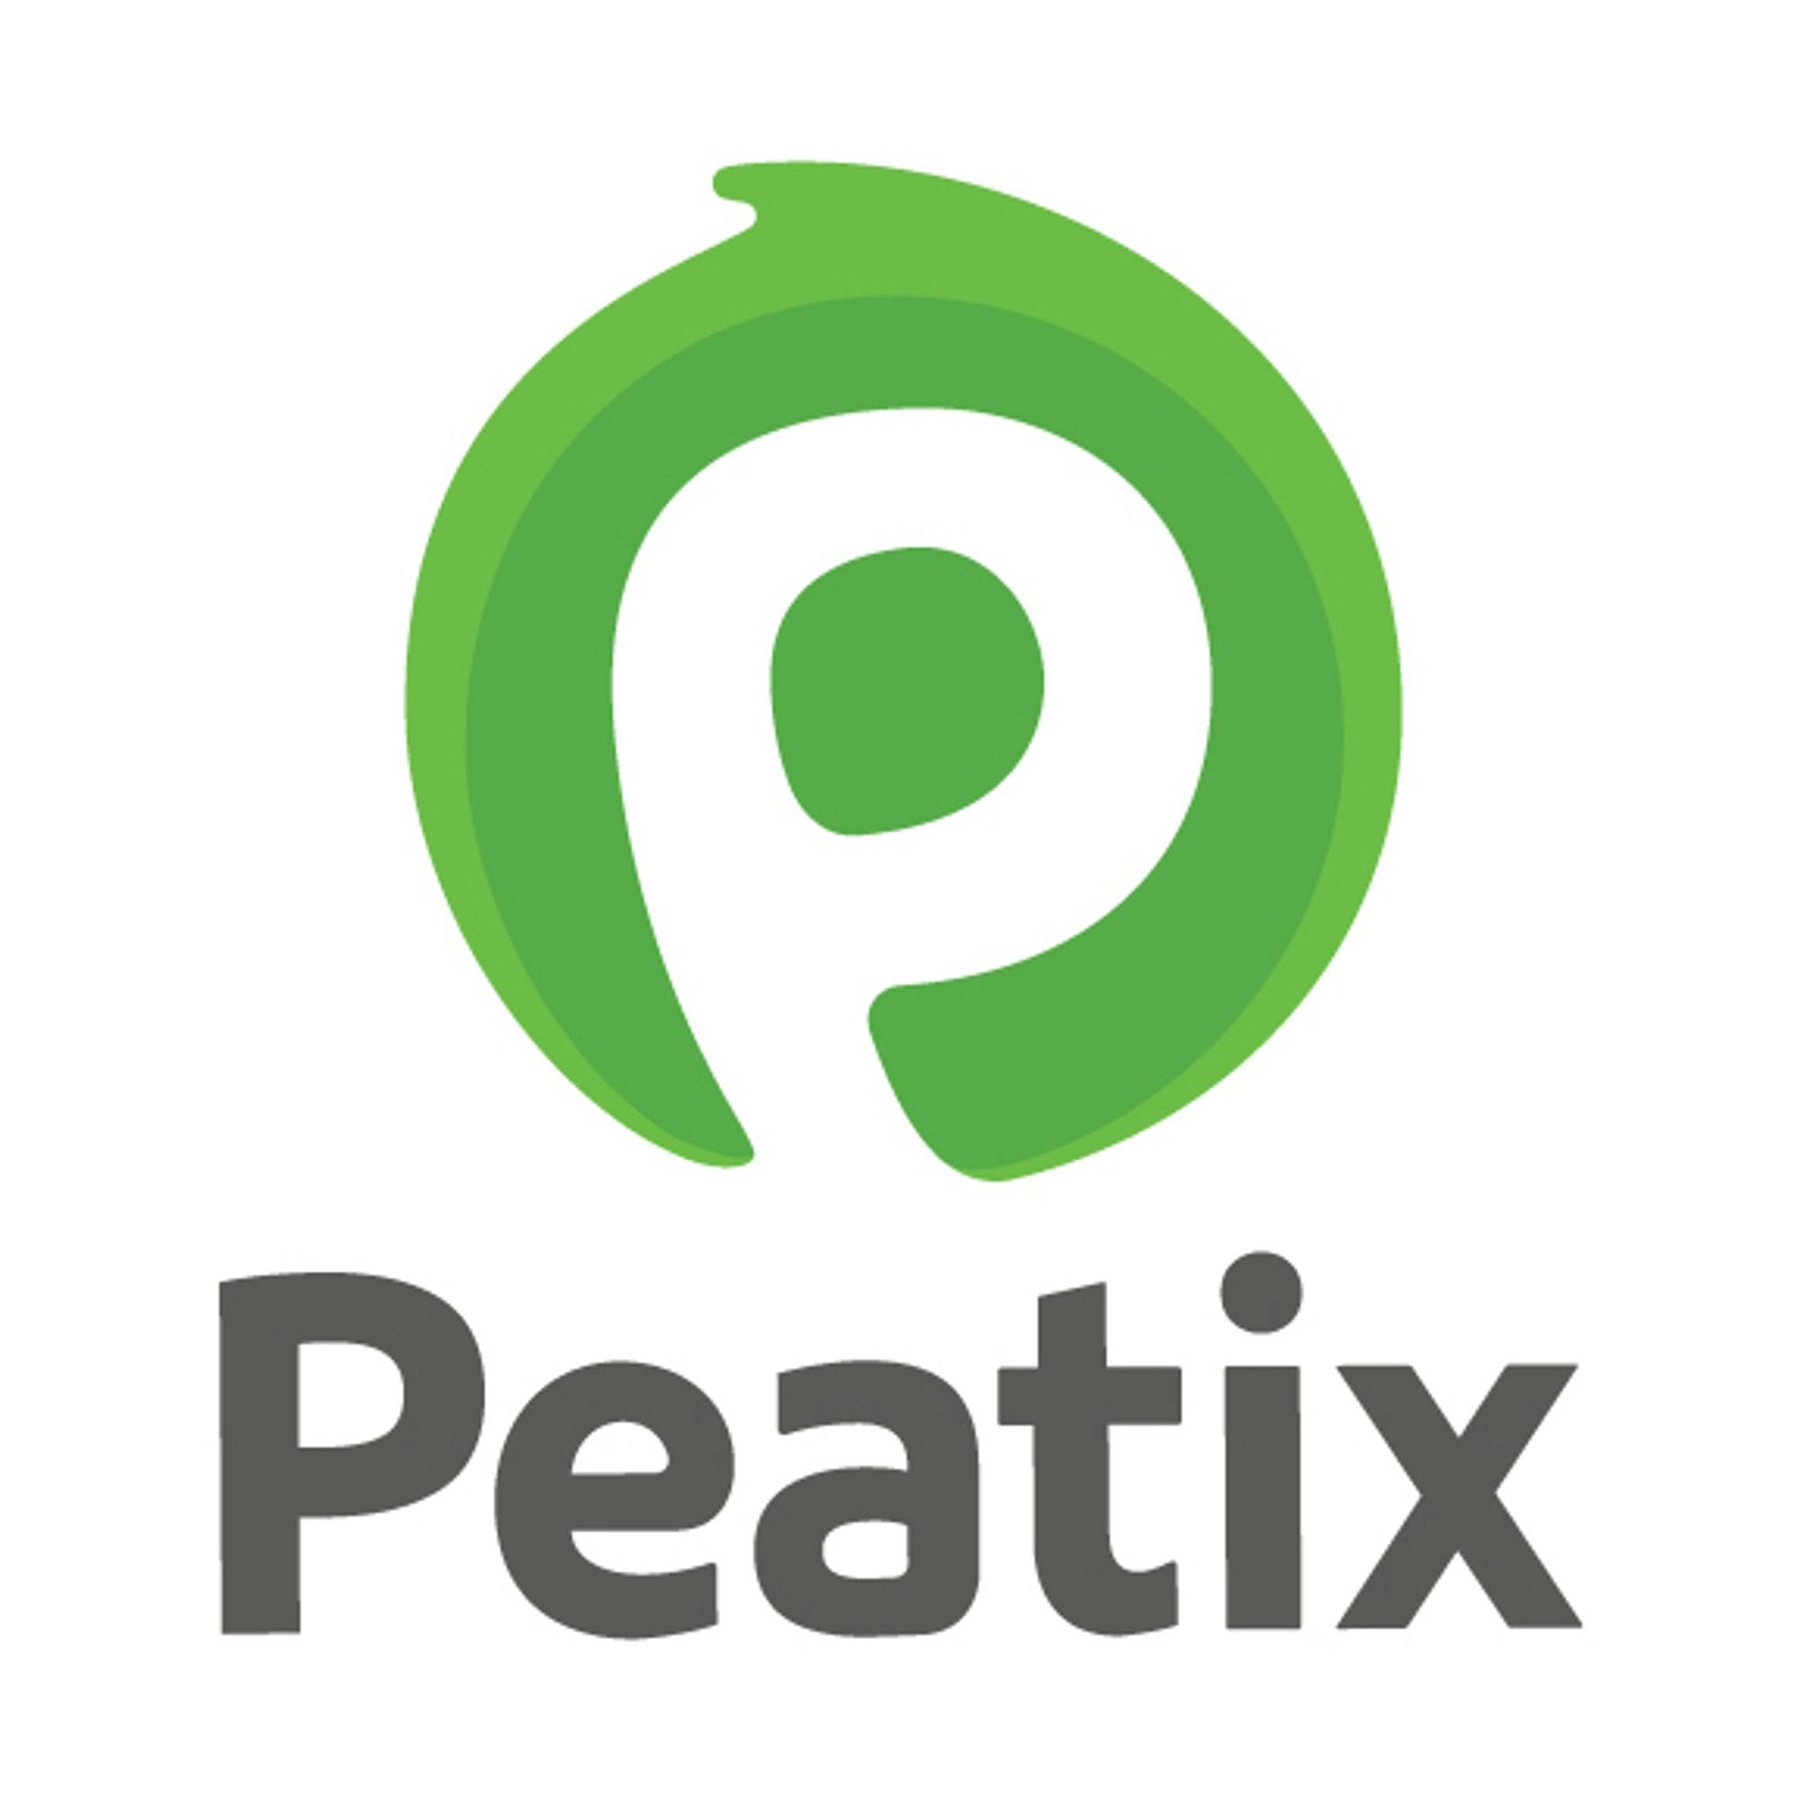 Peatix(イベントプラットフォーム)